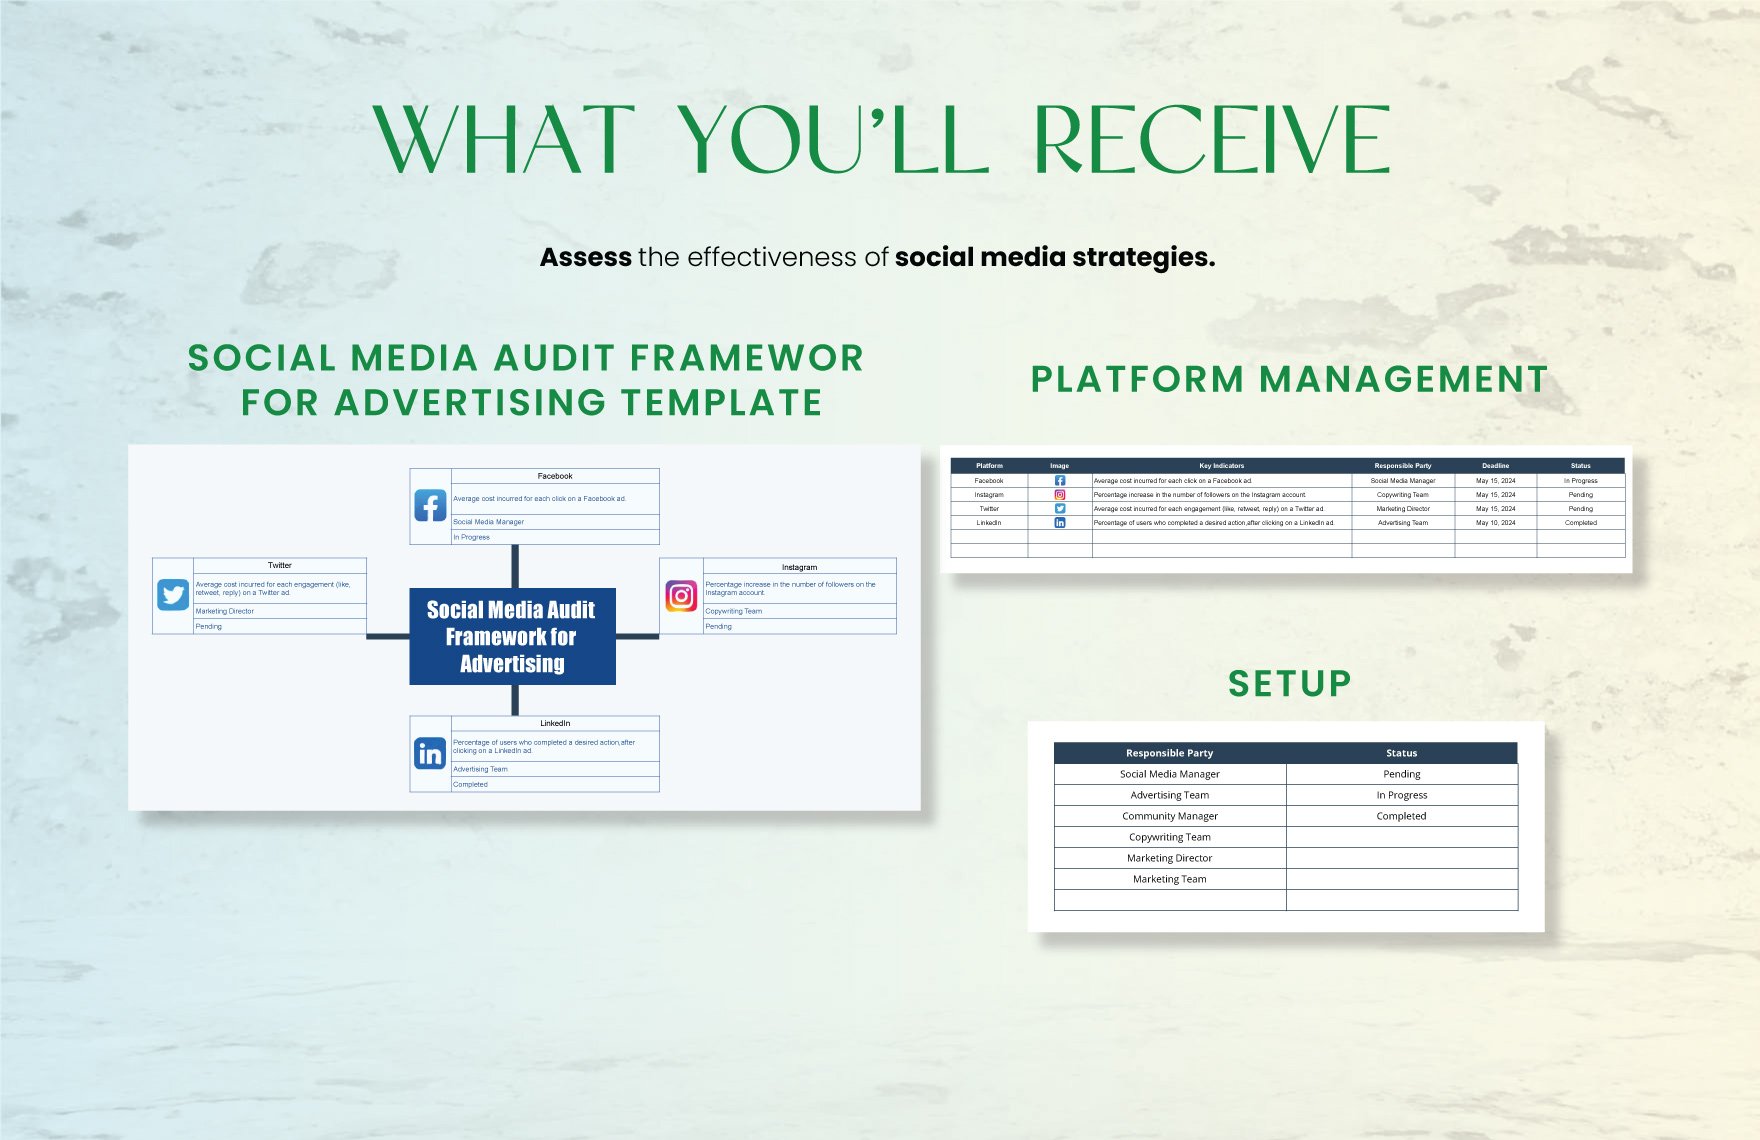 Social Media Audit Framework for Advertising Template